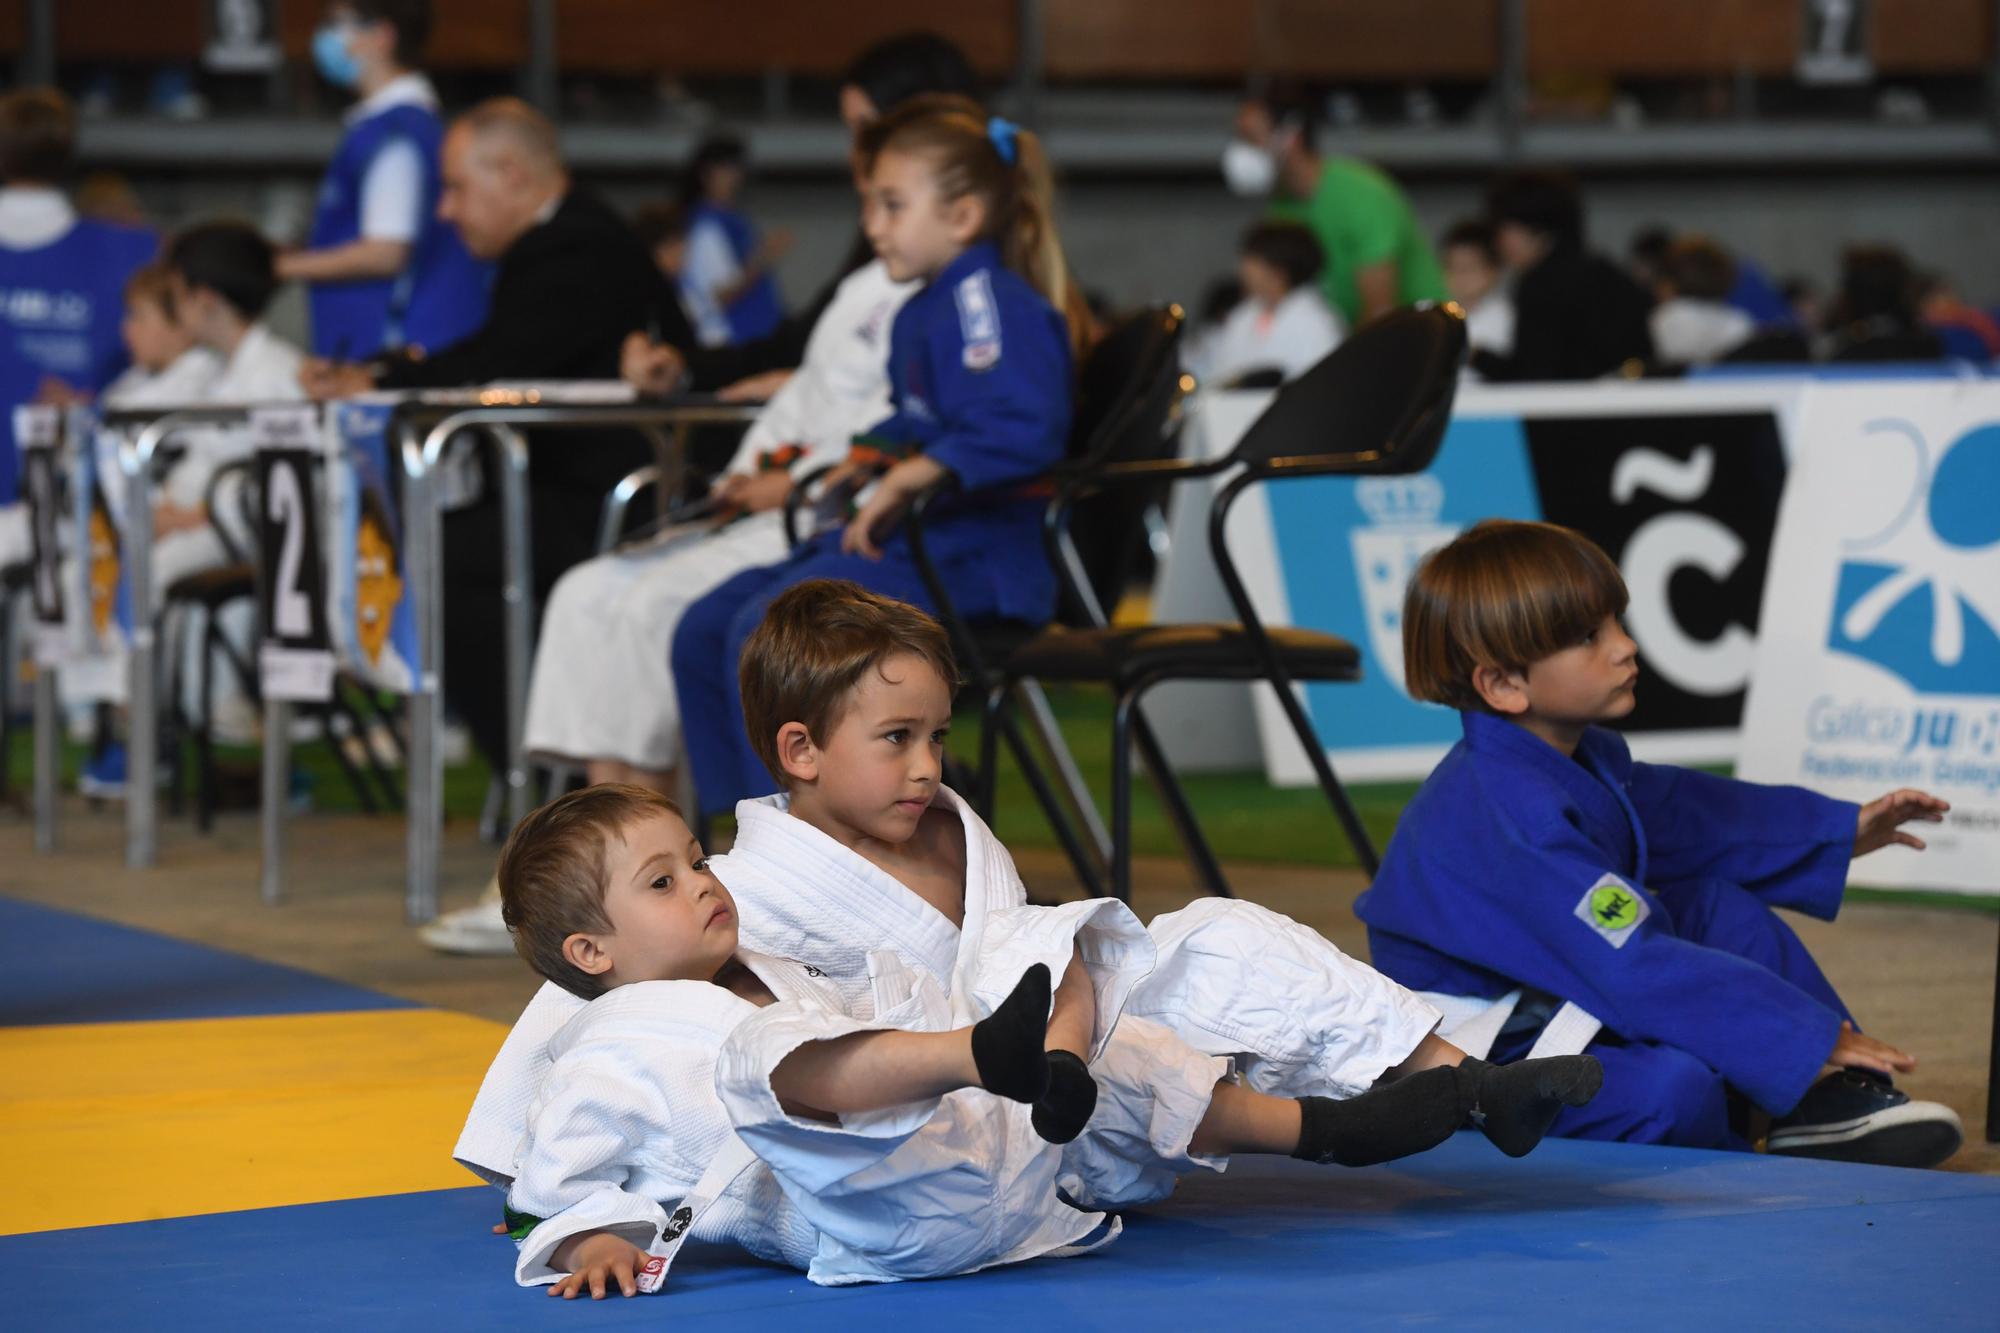 El trofeo Miguelito reúne a más de 2.000 niños en A Coruña